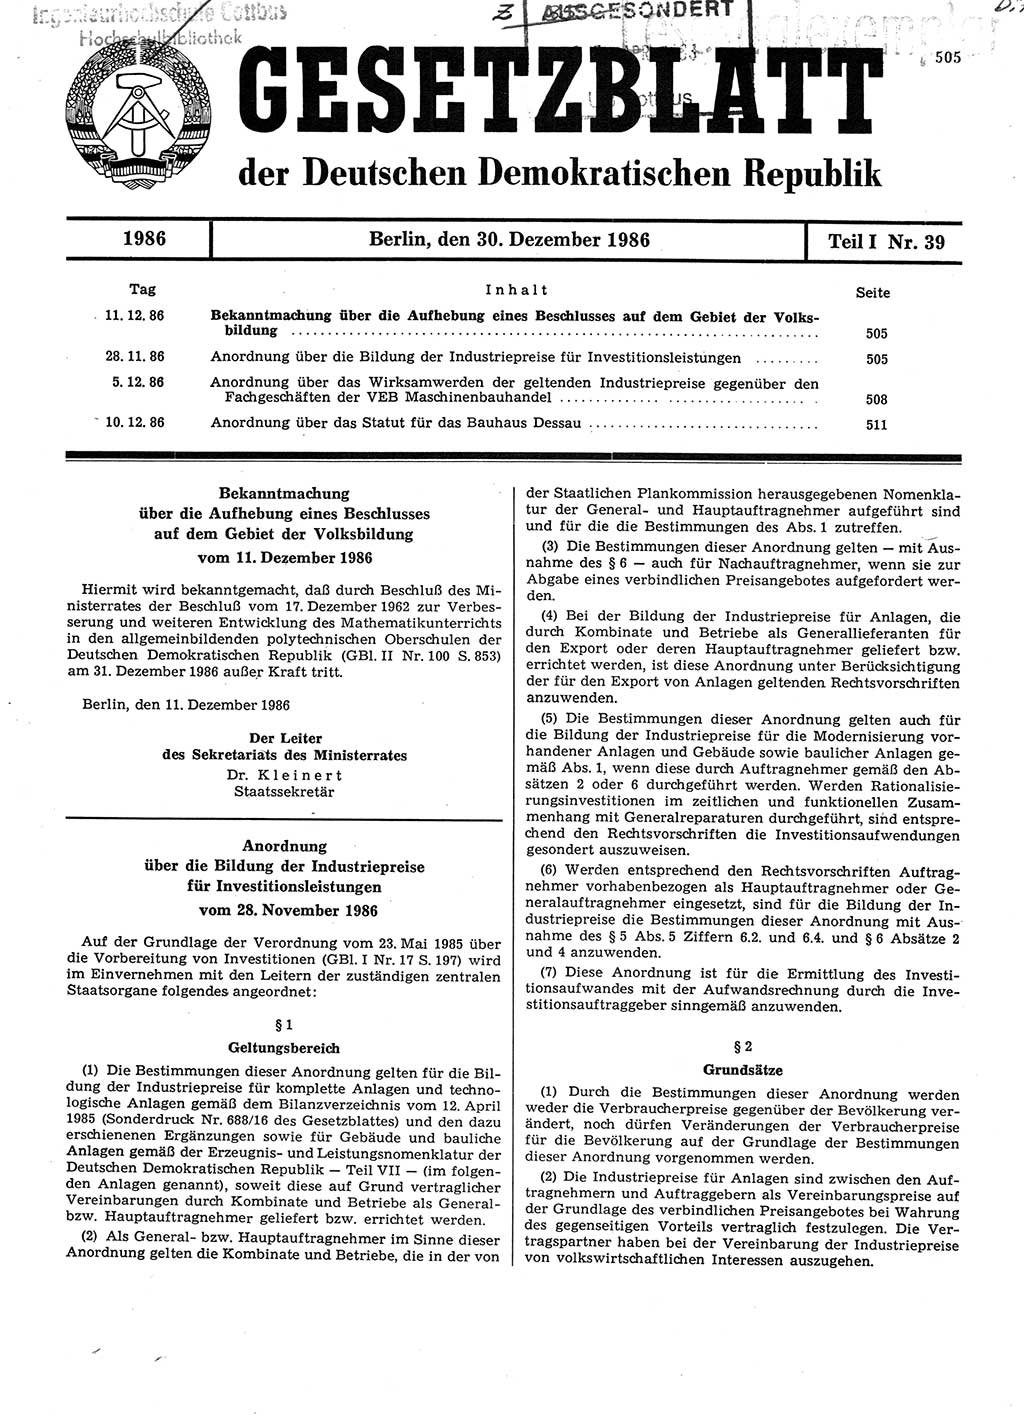 Gesetzblatt (GBl.) der Deutschen Demokratischen Republik (DDR) Teil Ⅰ 1986, Seite 505 (GBl. DDR Ⅰ 1986, S. 505)